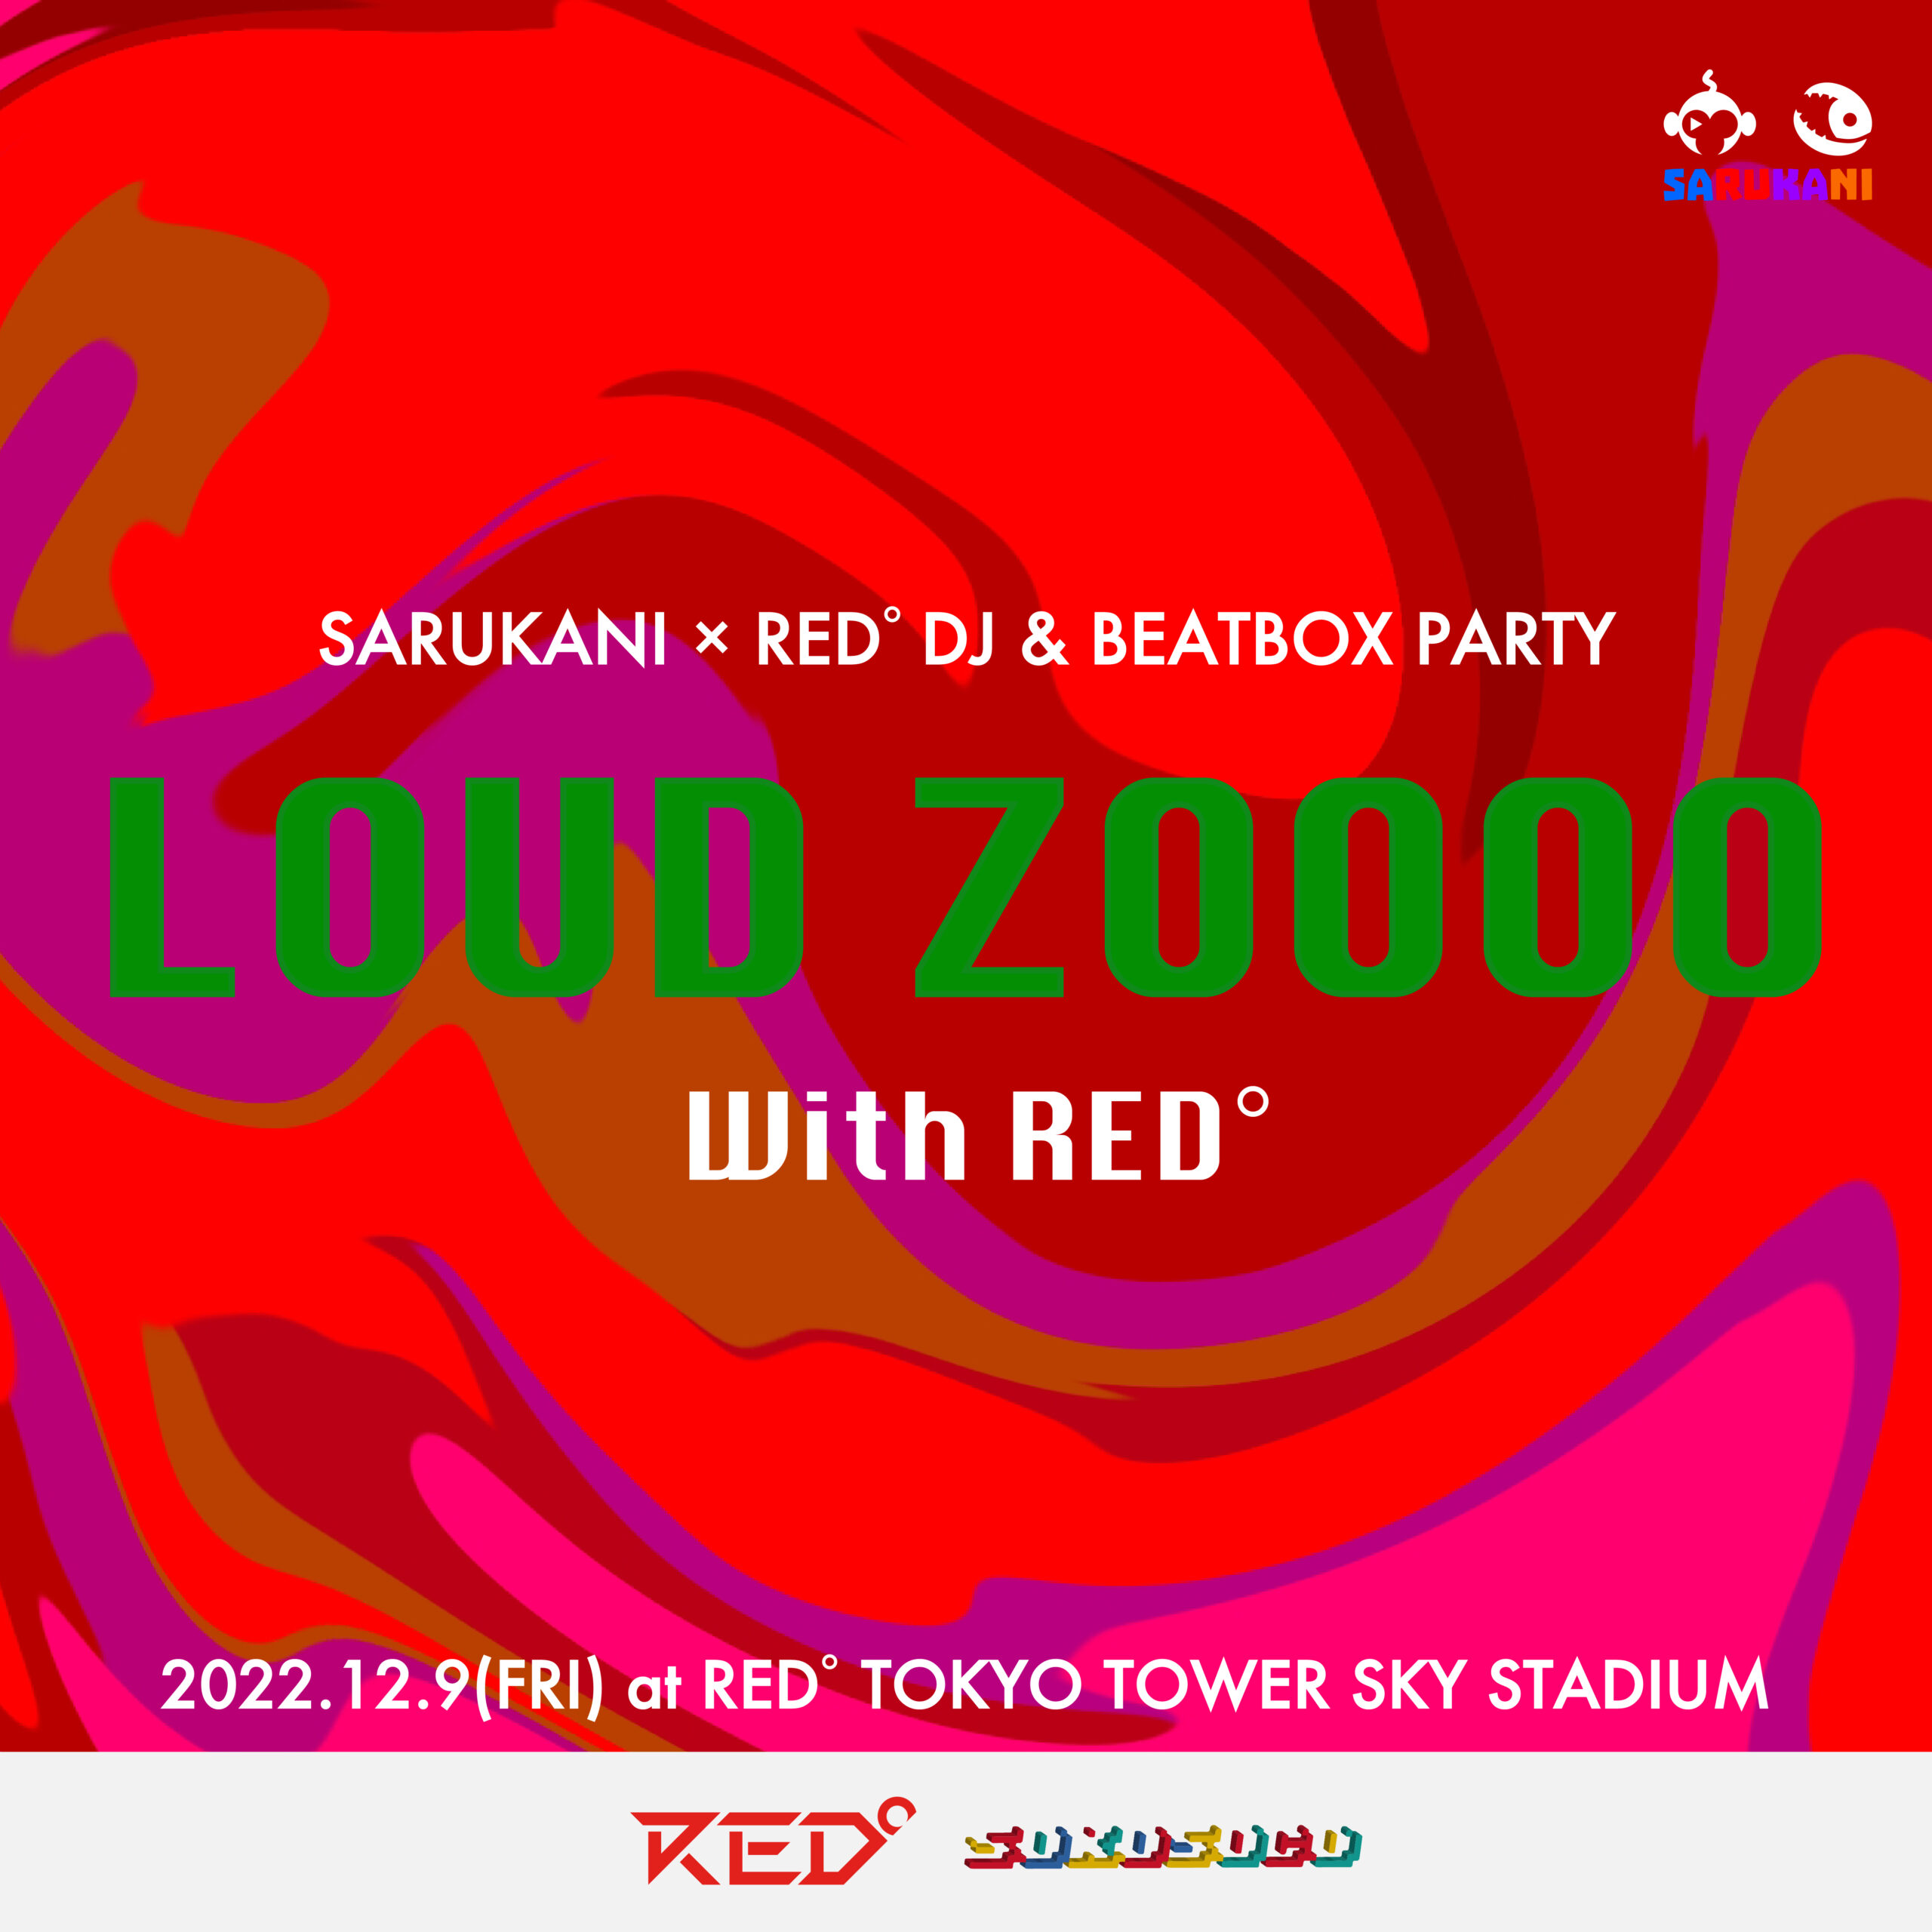 【公演終了】SARUKANI × RED° DJ & Beatbox Party 「LOUD ZOOOO With RED°」